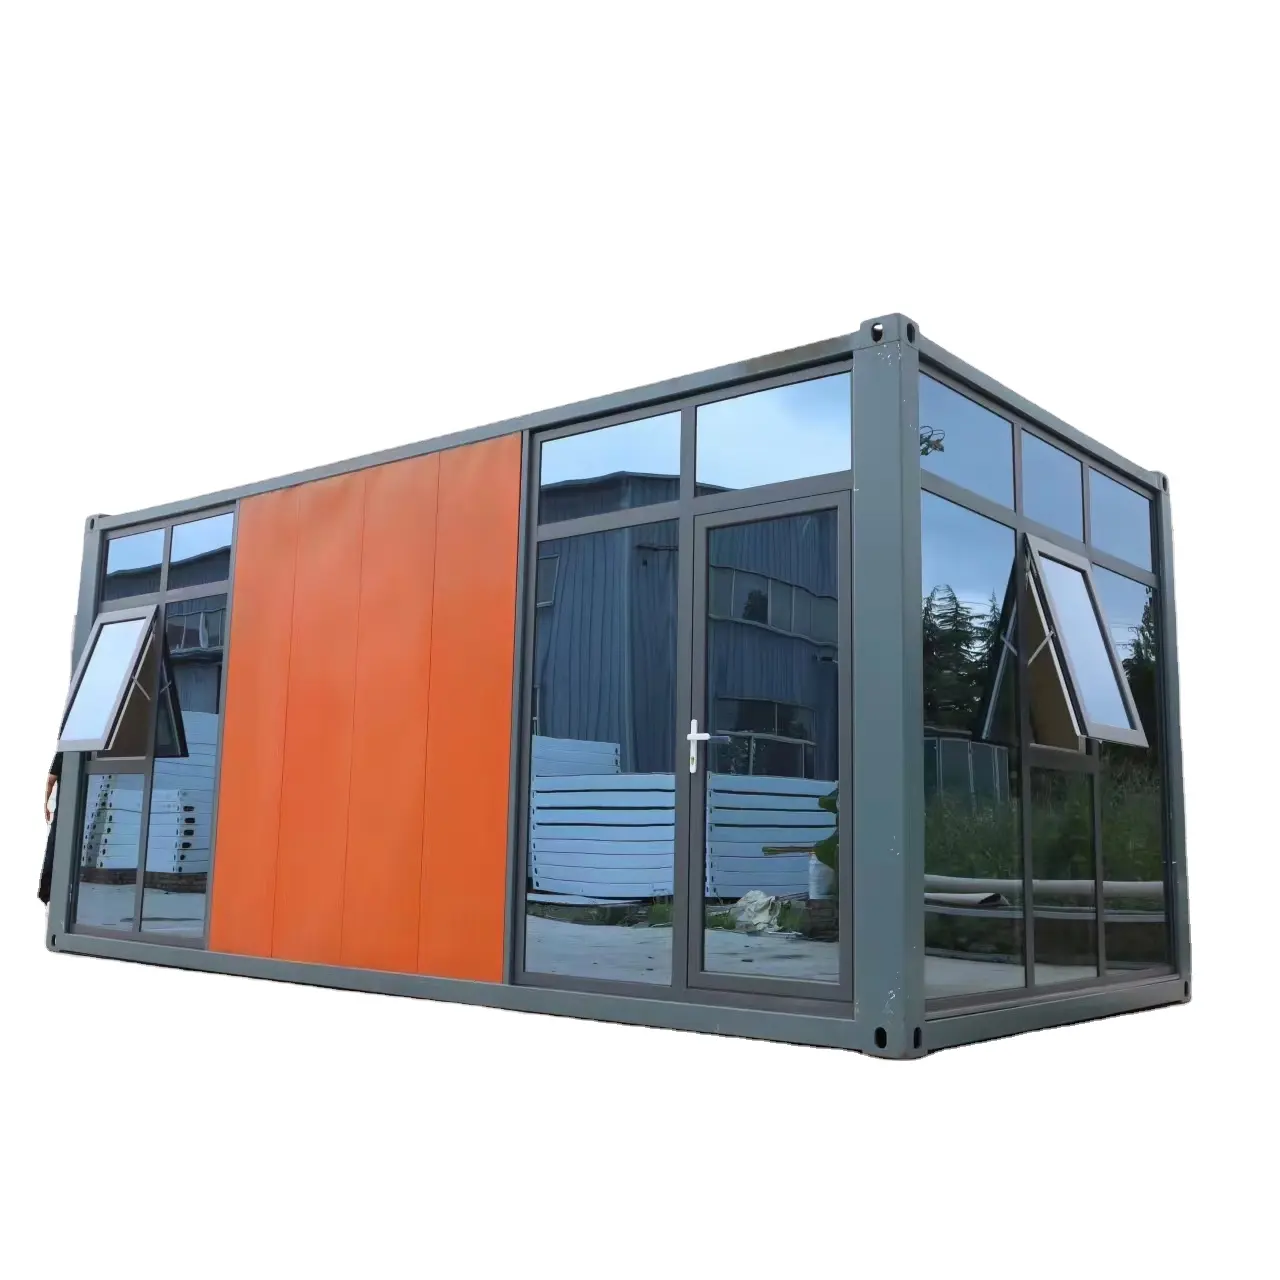 조립식 주택 조립식 홈 컨테이너 철골 구조 하우스 컨테이너 샌드위치 벽 용 확장 가능한 모듈 단위